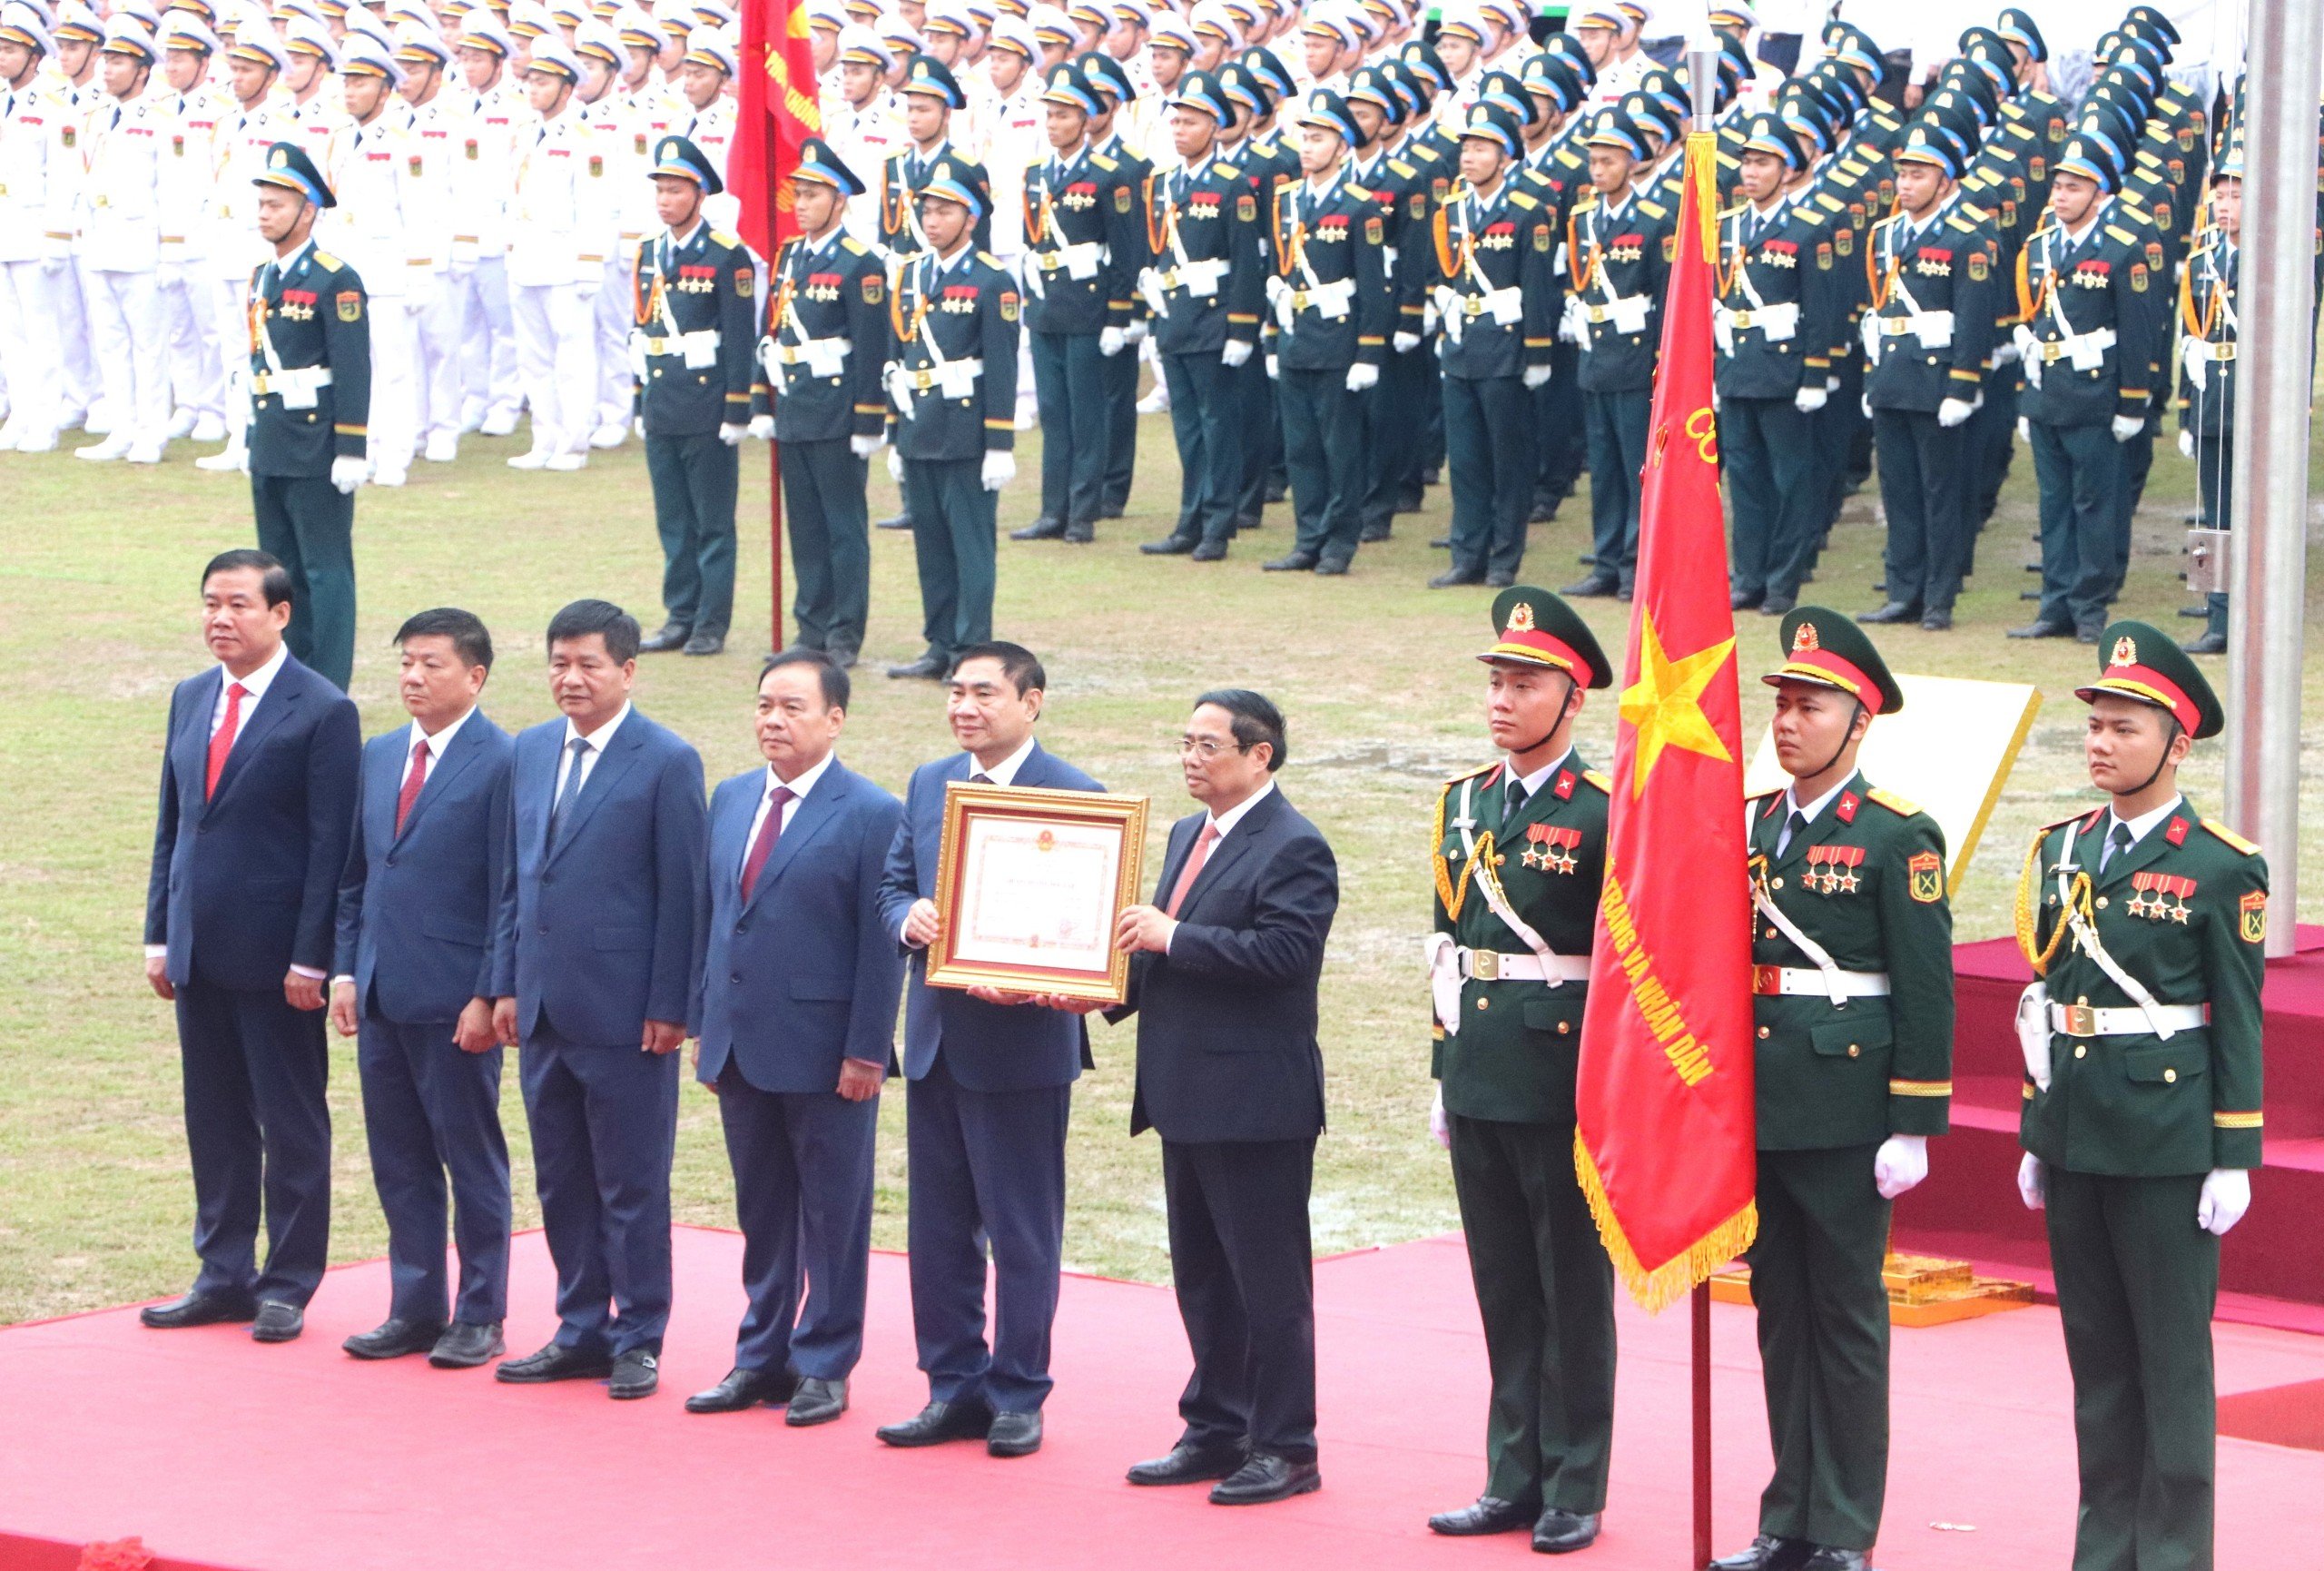 Thủ tướng Phạm Minh Chính thay mặt lãnh đạo Đảng, Nhà nước trao tặng Huân chương Độc lập hạng Nhất cho Đảng bộ, chính quyền và nhân dân các dân tộc tỉnh Điện Biên.